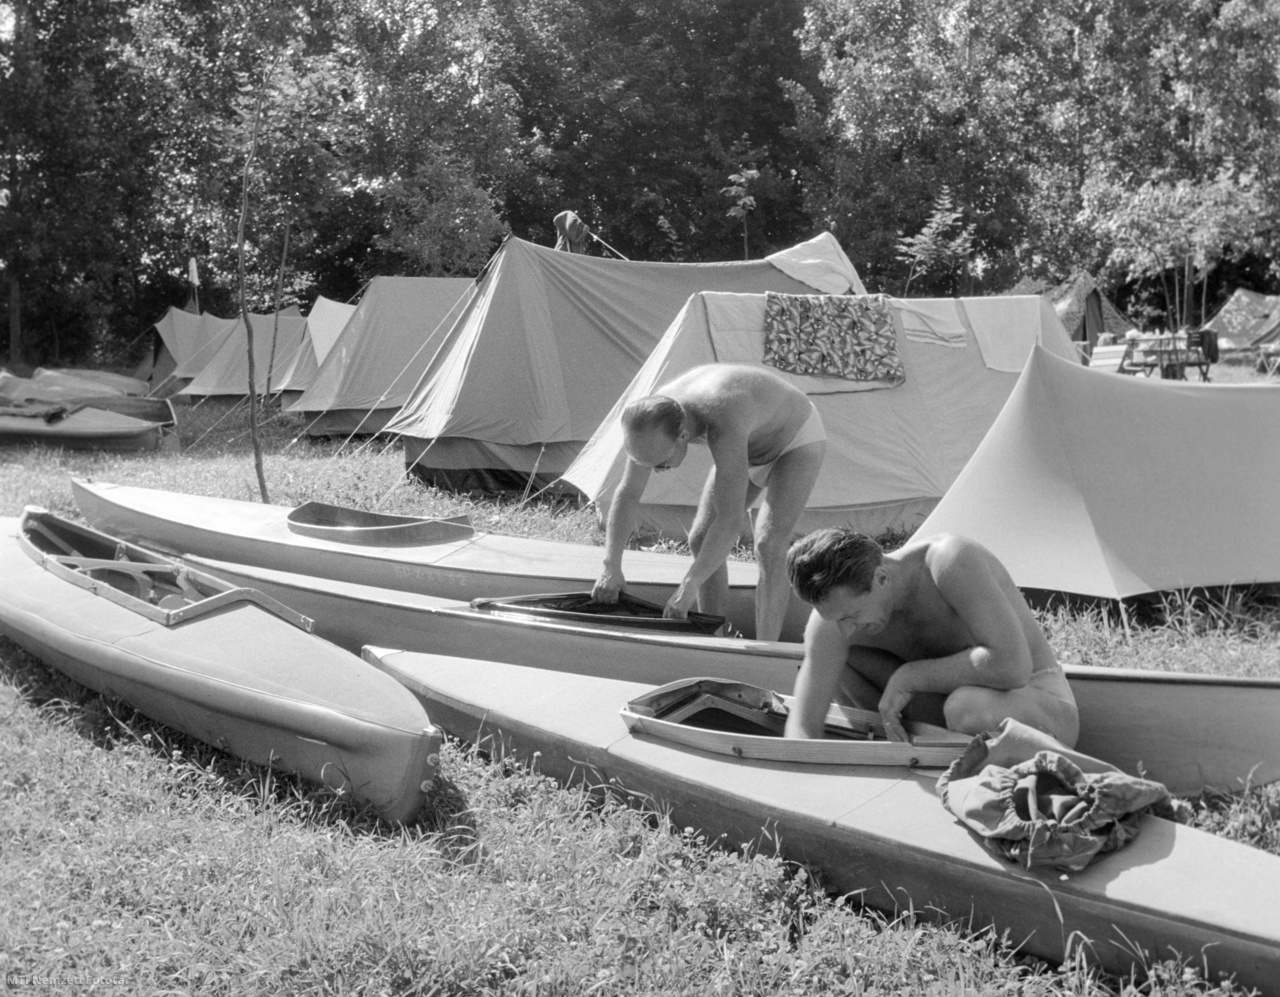 Szentendre, 1963. június 23. A Magyar Természetbarát Szövetség vízitúrázó szakosztályának tagjai a dunai evezéshez készítik elő a kajakokat a szentendrei Pap-szigeten lévő táborukban.